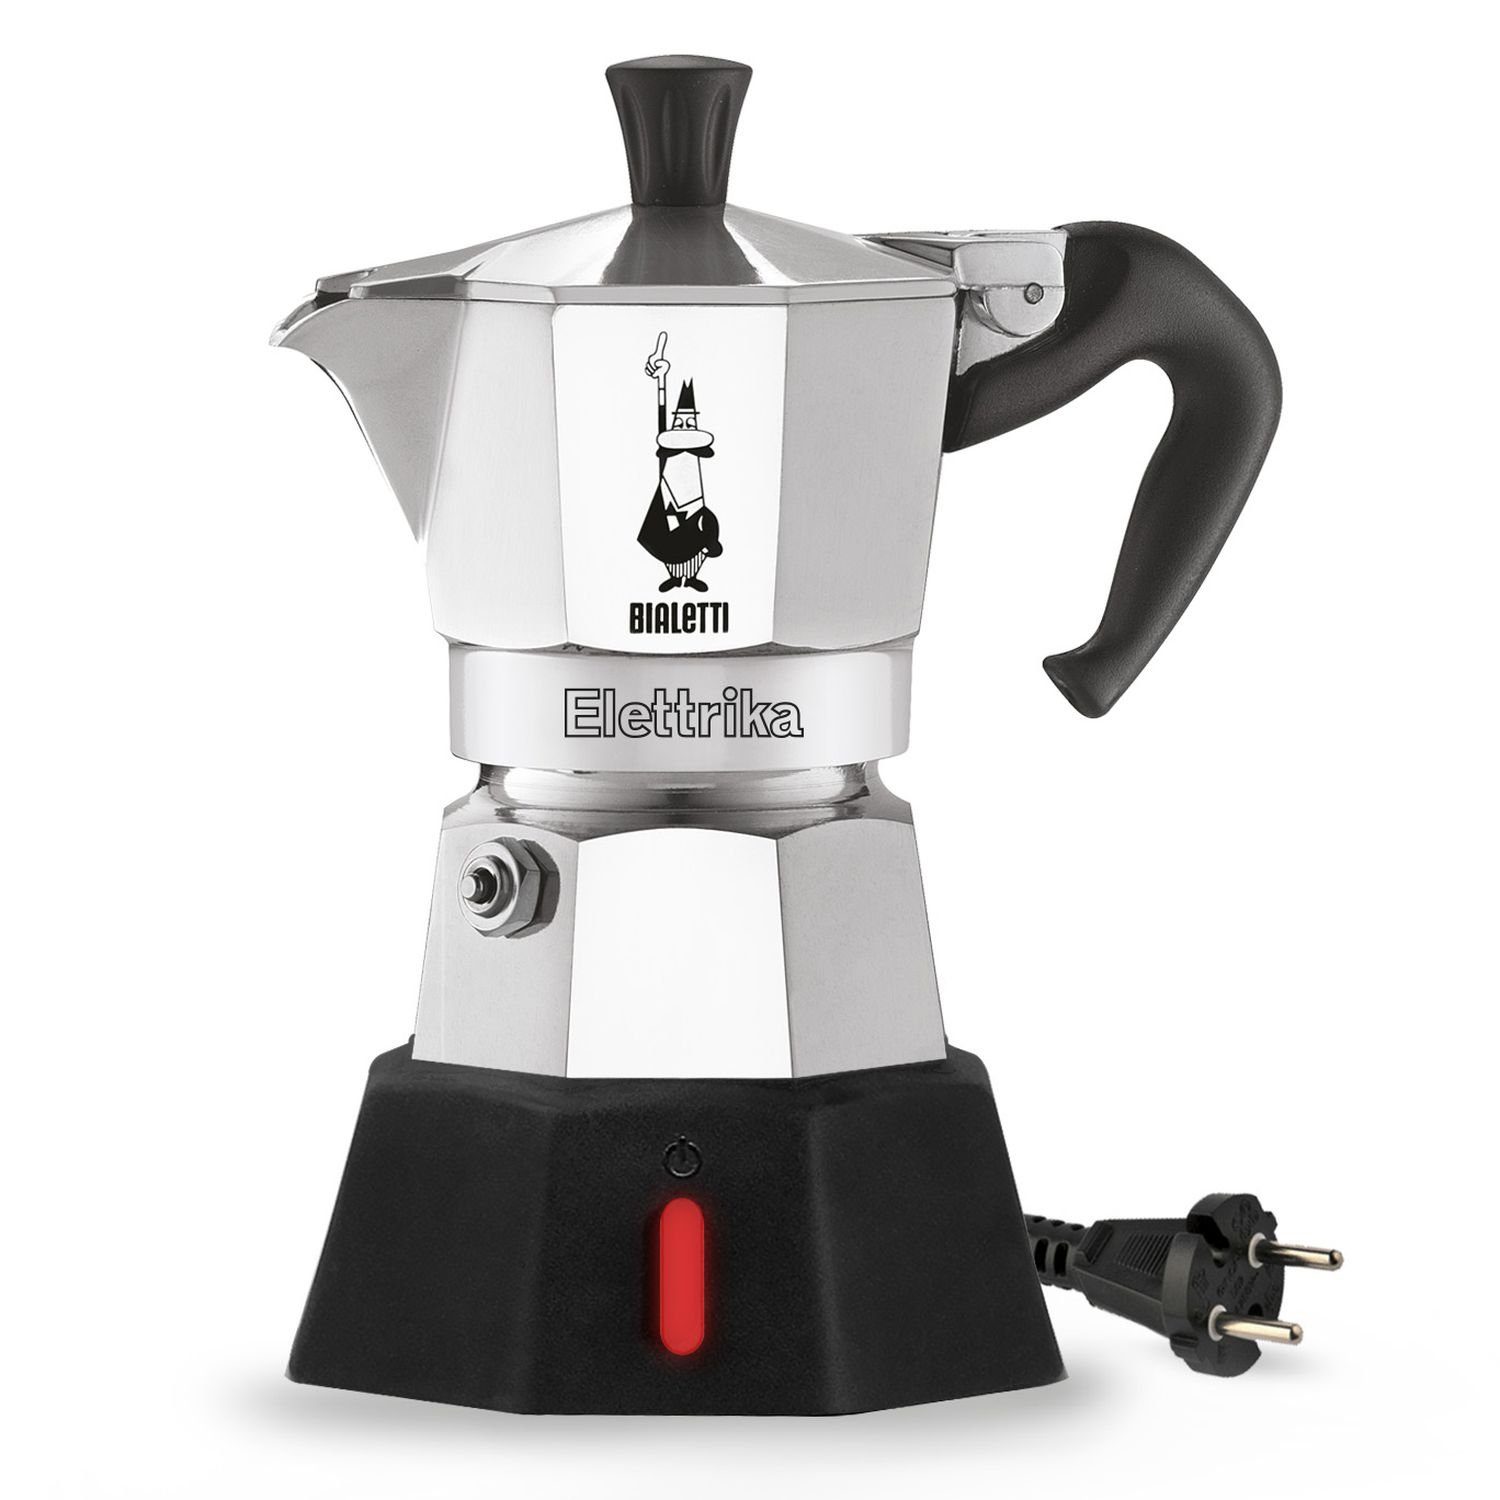 Tassen, 0,09l 2 Kaffeekanne Moka New Espressokocher Elettrika BIALETTI